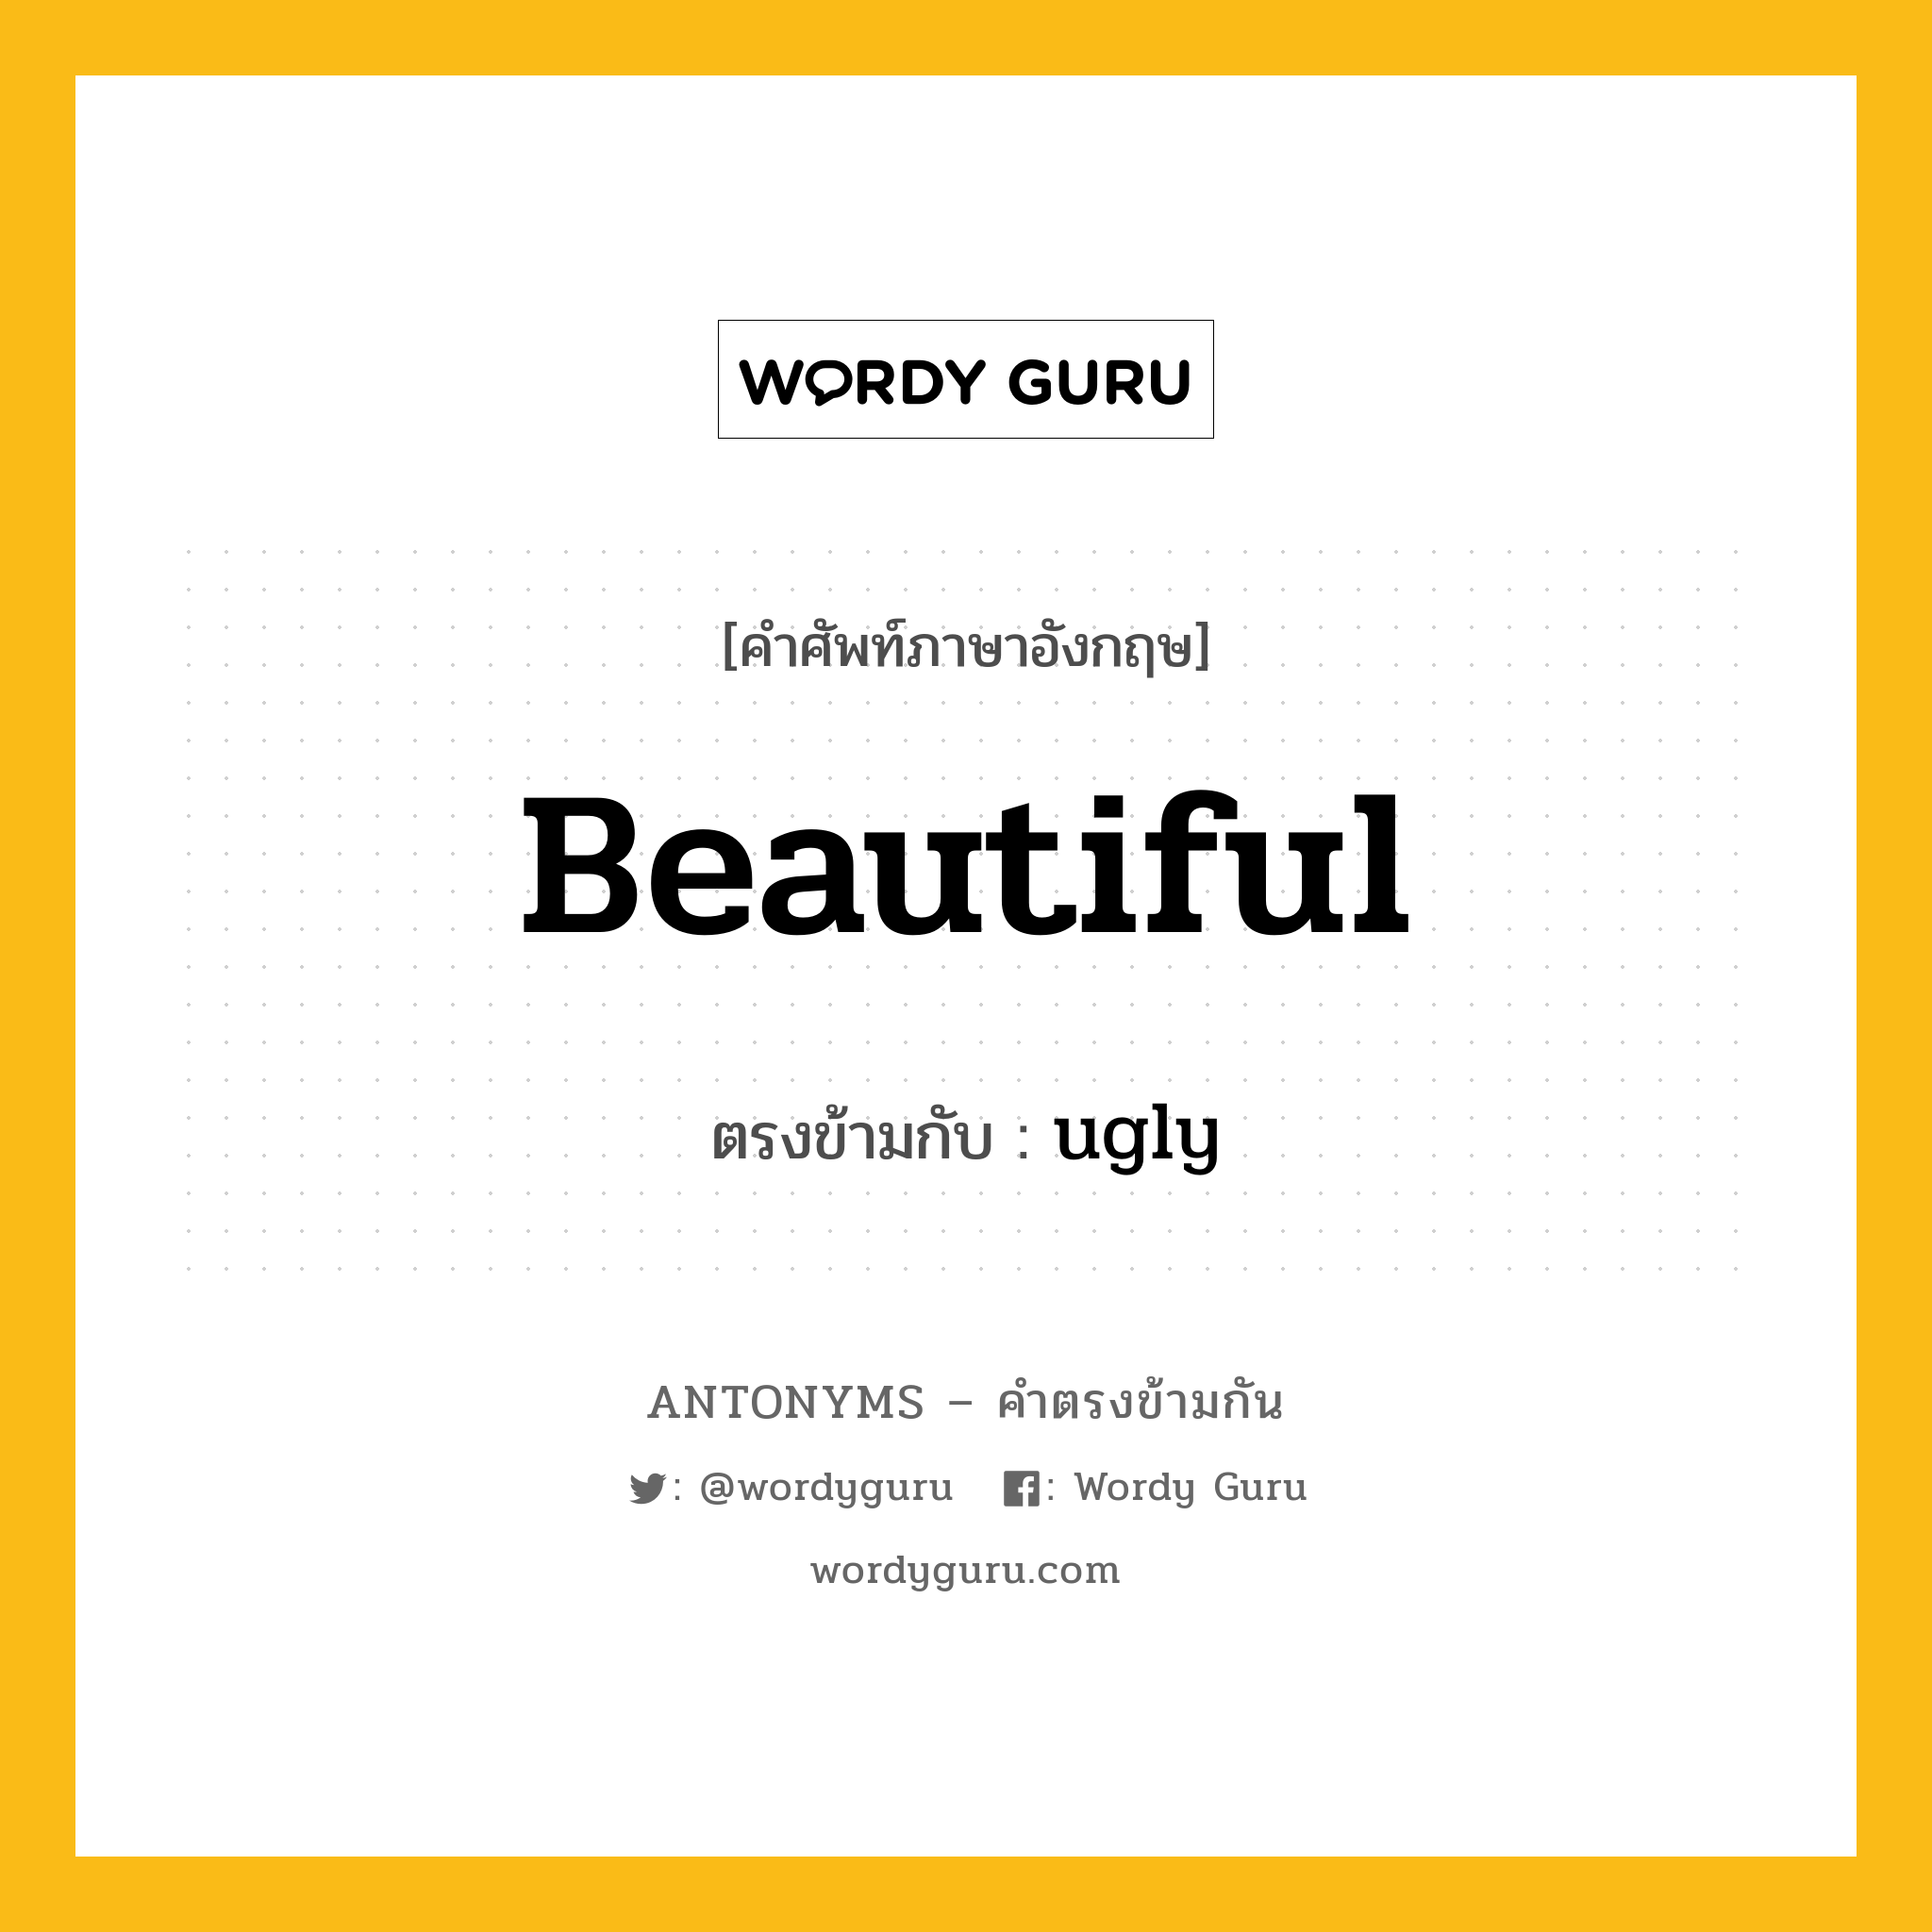 beautiful เป็นคำตรงข้ามกับคำไหนบ้าง?, คำศัพท์ภาษาอังกฤษที่มีความหมายตรงข้ามกัน beautiful ตรงข้ามกับ ugly หมวด ugly